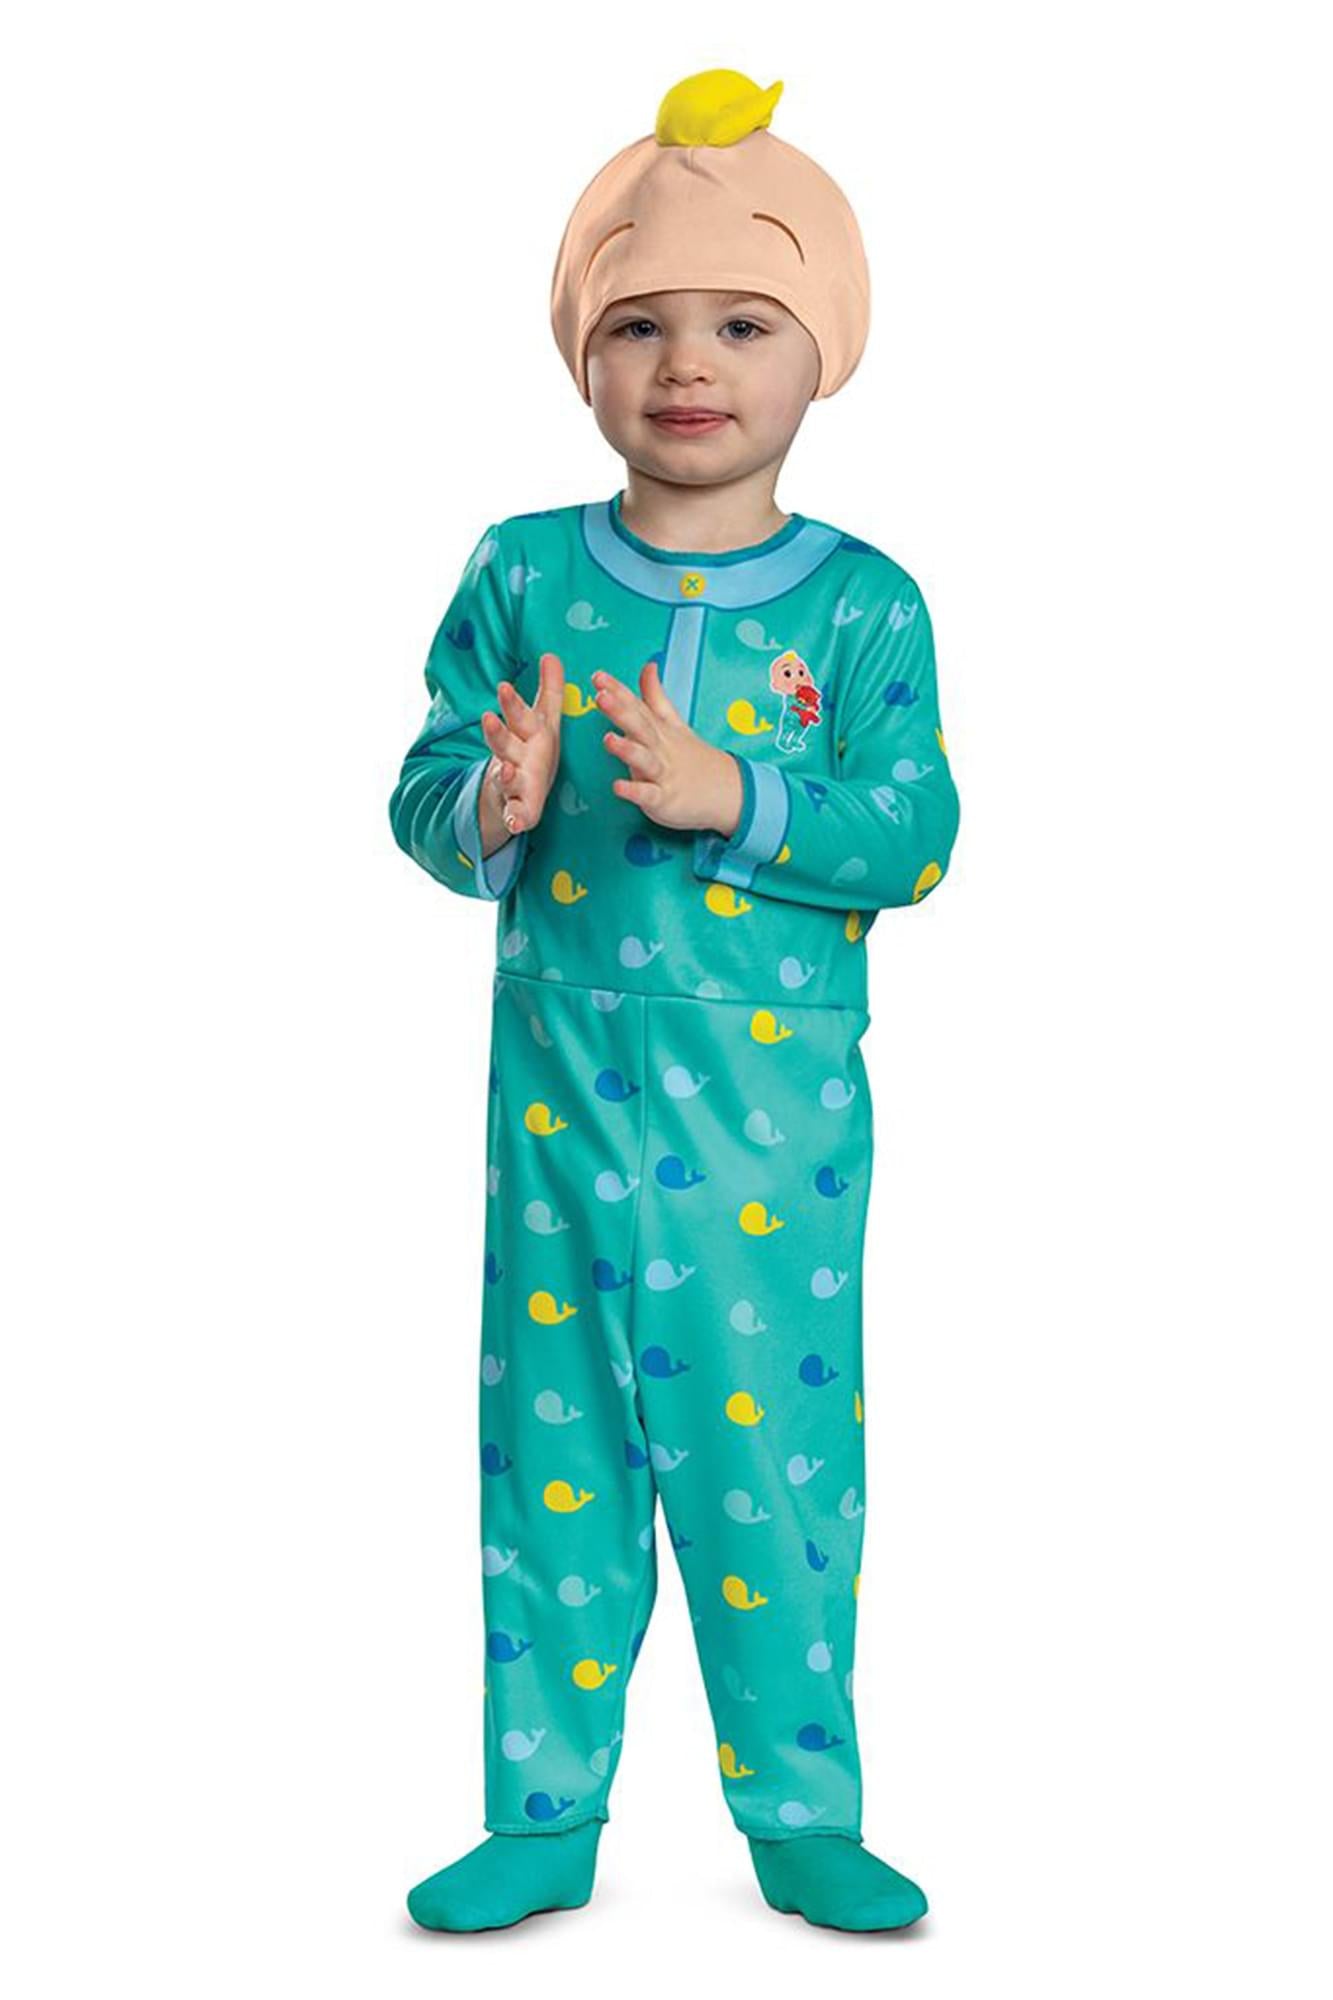 Photos - Fancy Dress Cocomelon JJ Infant/Toddler Costume DGC-156869M-C 